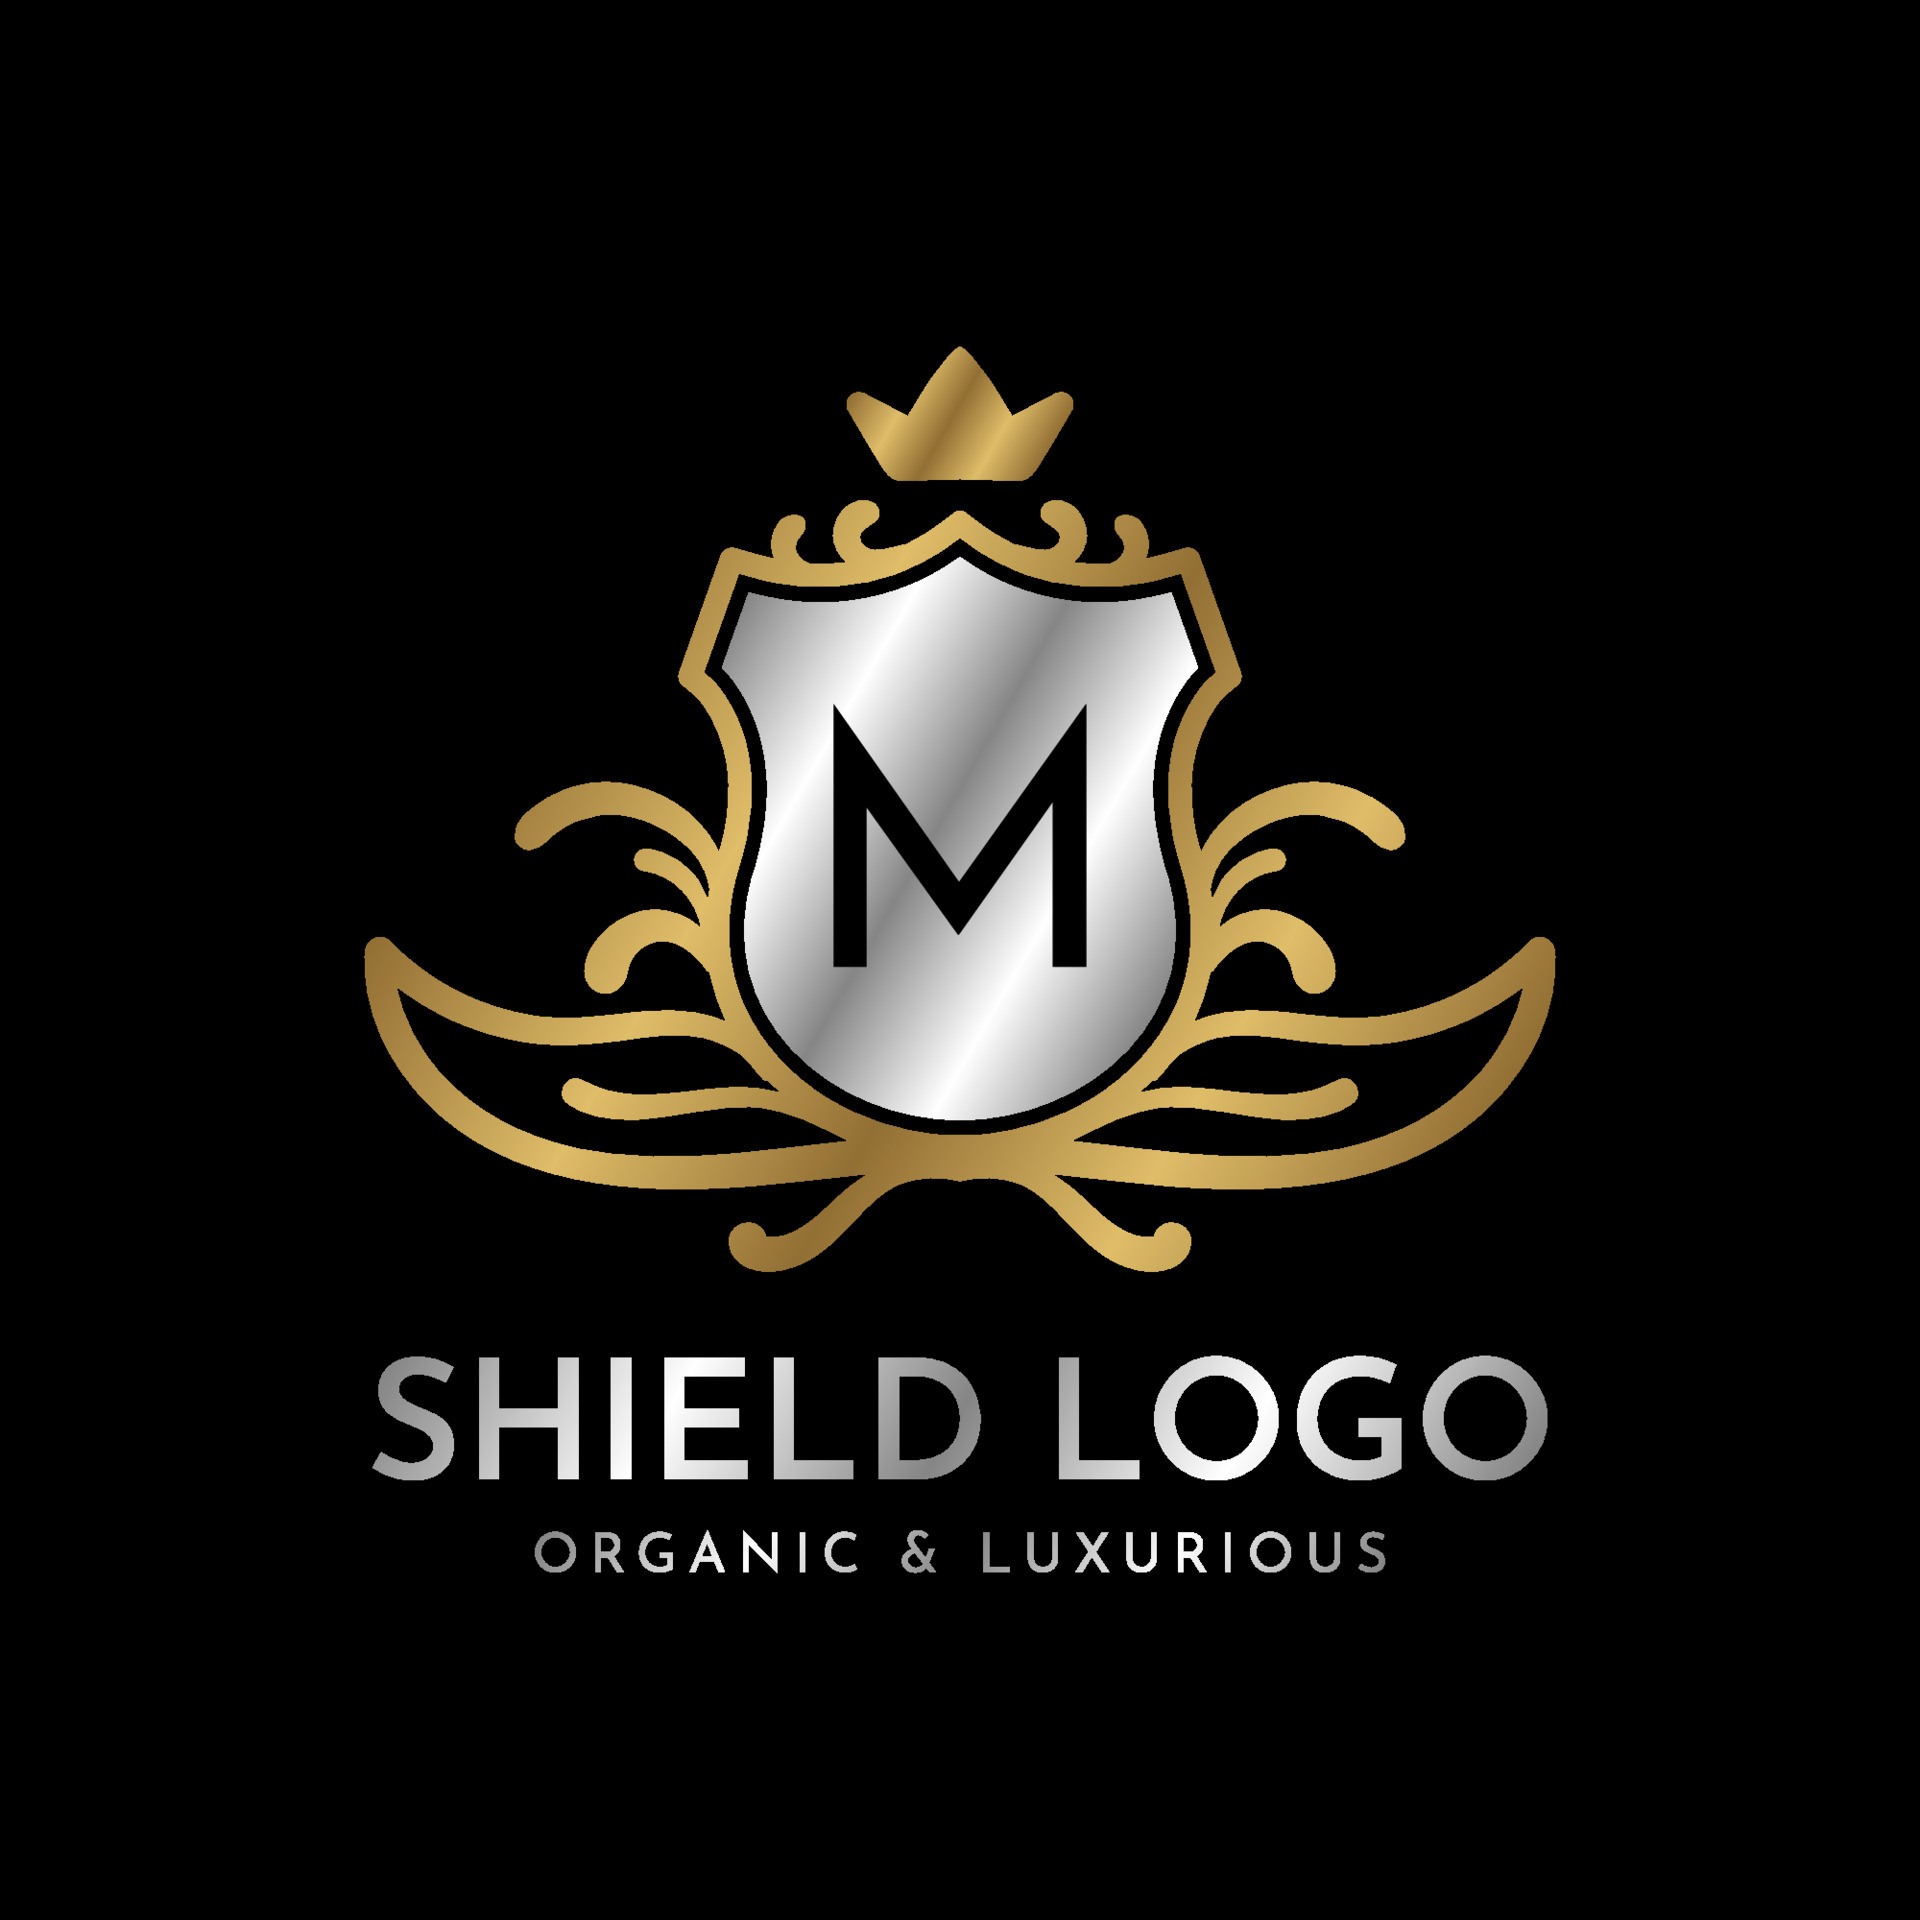 Gold royal shield m letter logo graceful elegant Vector Image